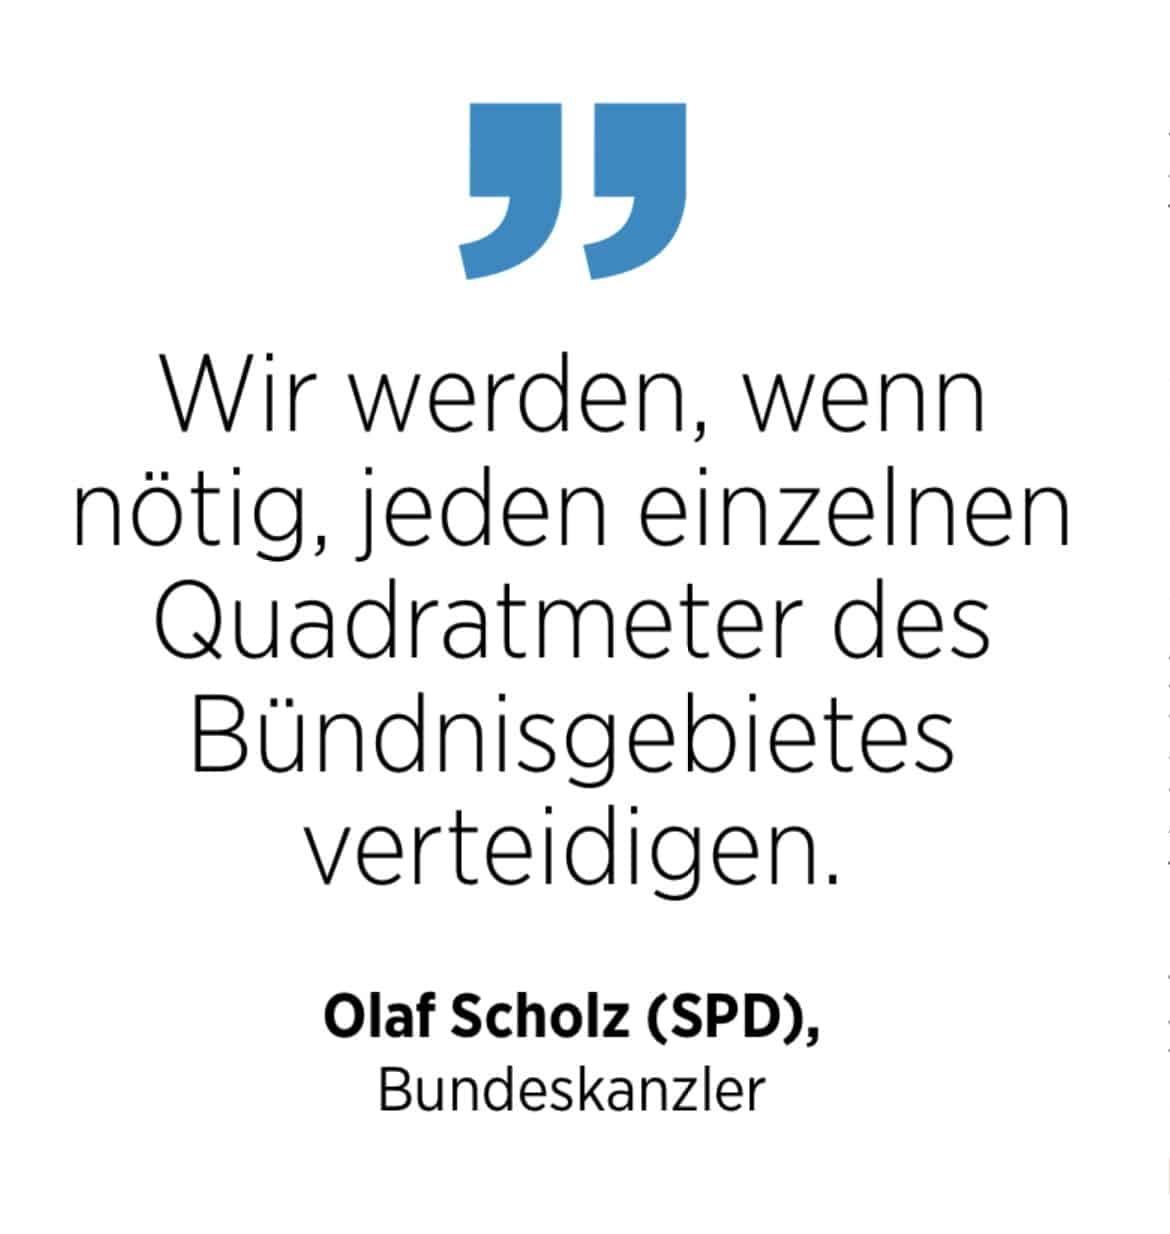 Zitat von Bundeskanzler Olaf Scholz zur Verteidigung des Bündnisgebietes